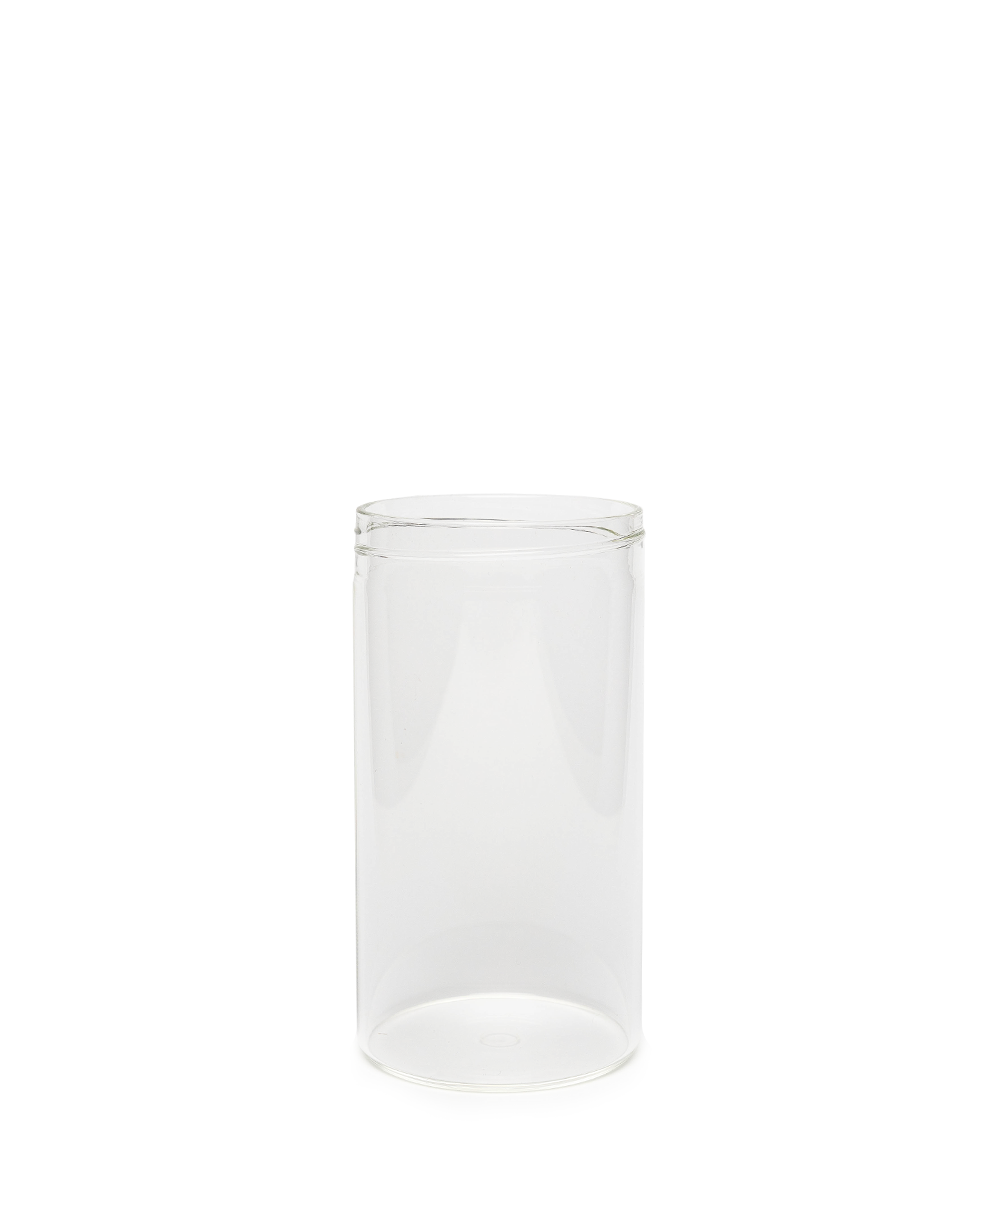 Hier abgebildet das Ersatzglas zu dem Weindekanter von der Brand Eto - RAUM conceptstore